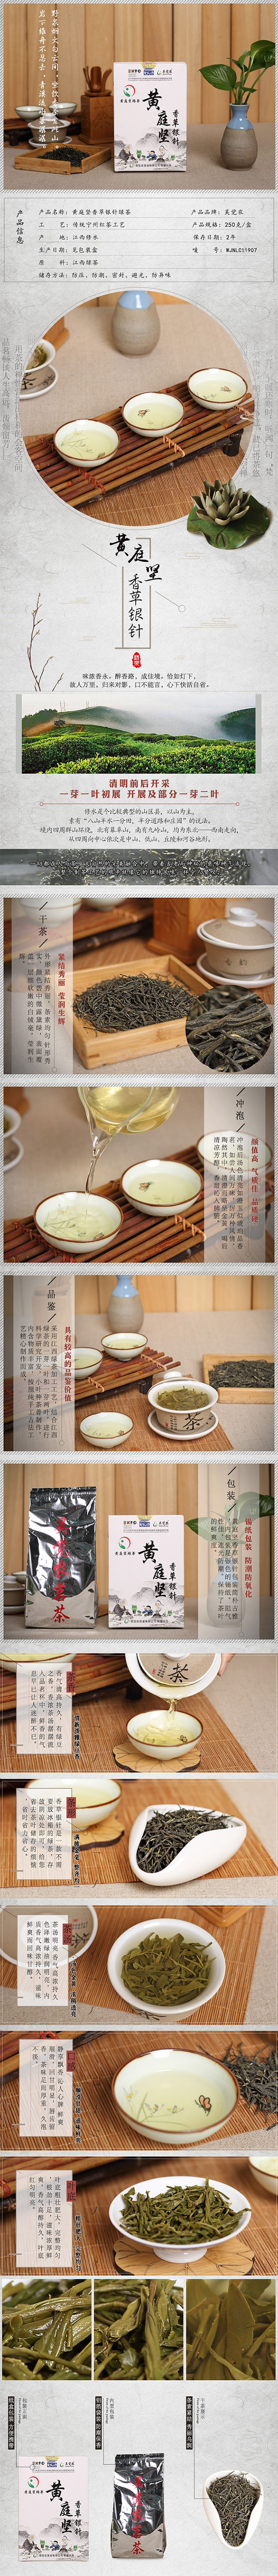 吴觉农茶叶 江西修水绿茶 黄庭坚香草银针 2016年春茶(图1)